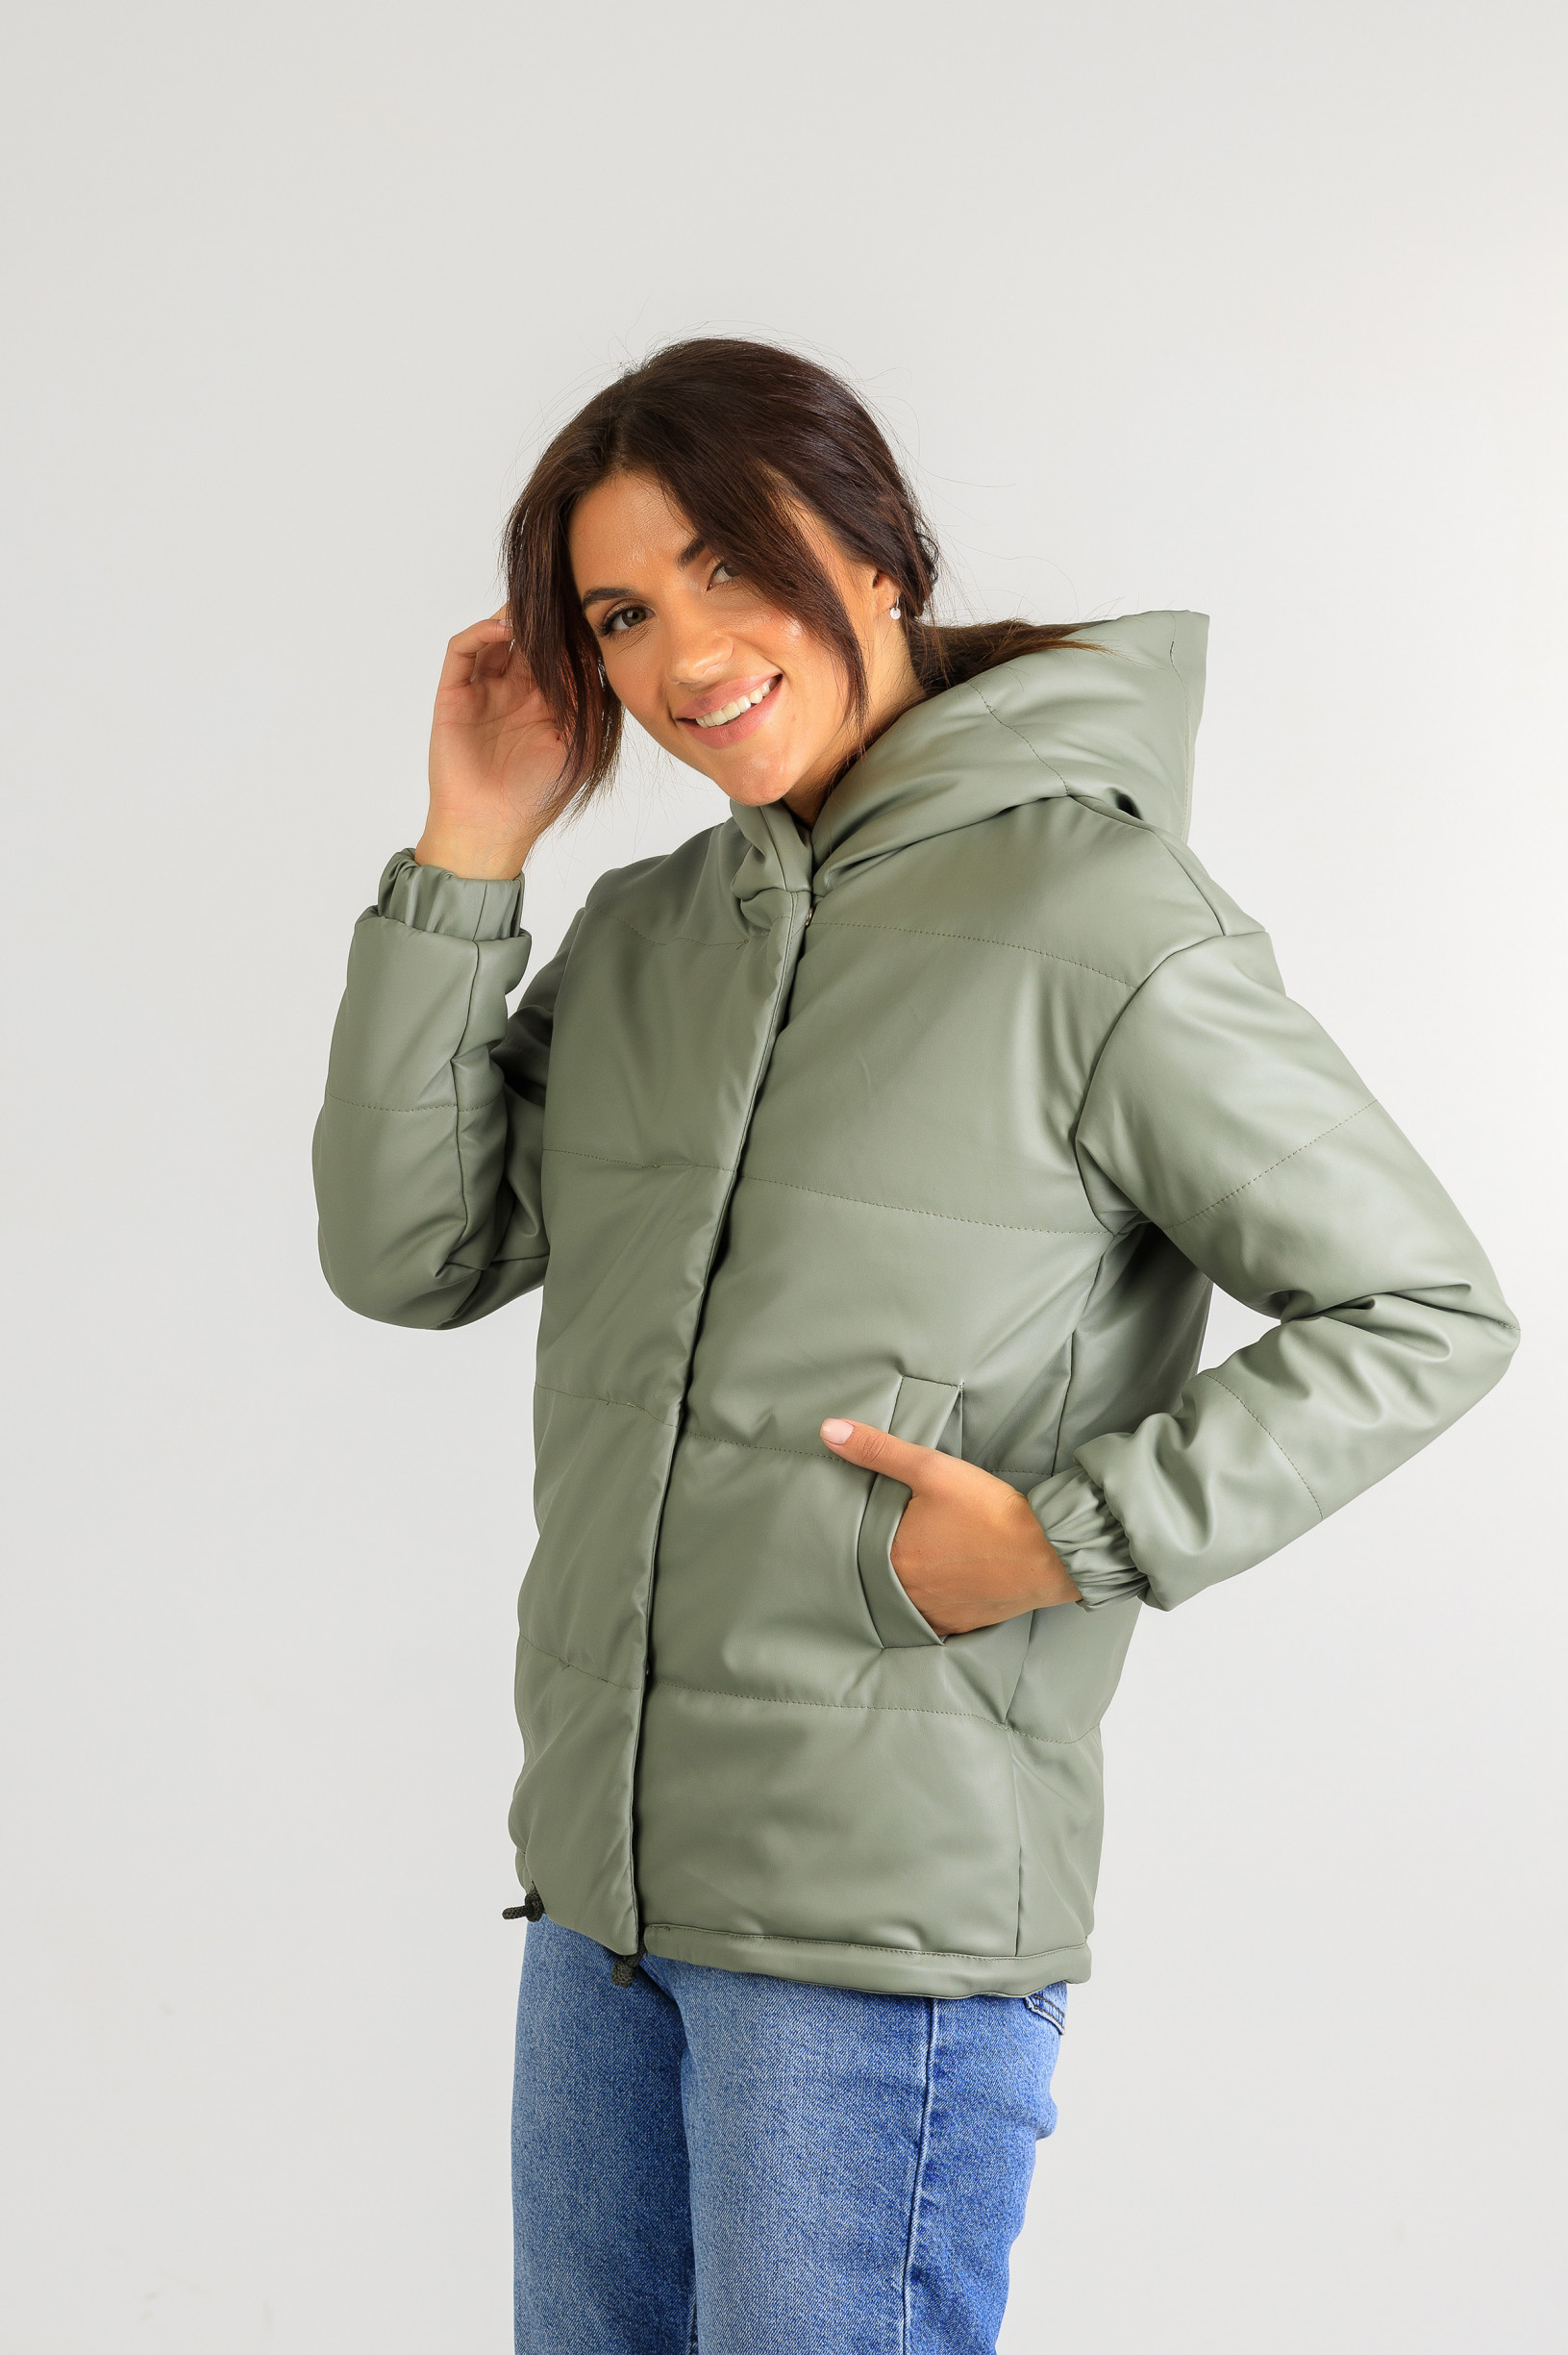 Демисезонная женская куртка из эко-кожи Тина зелёного цвета